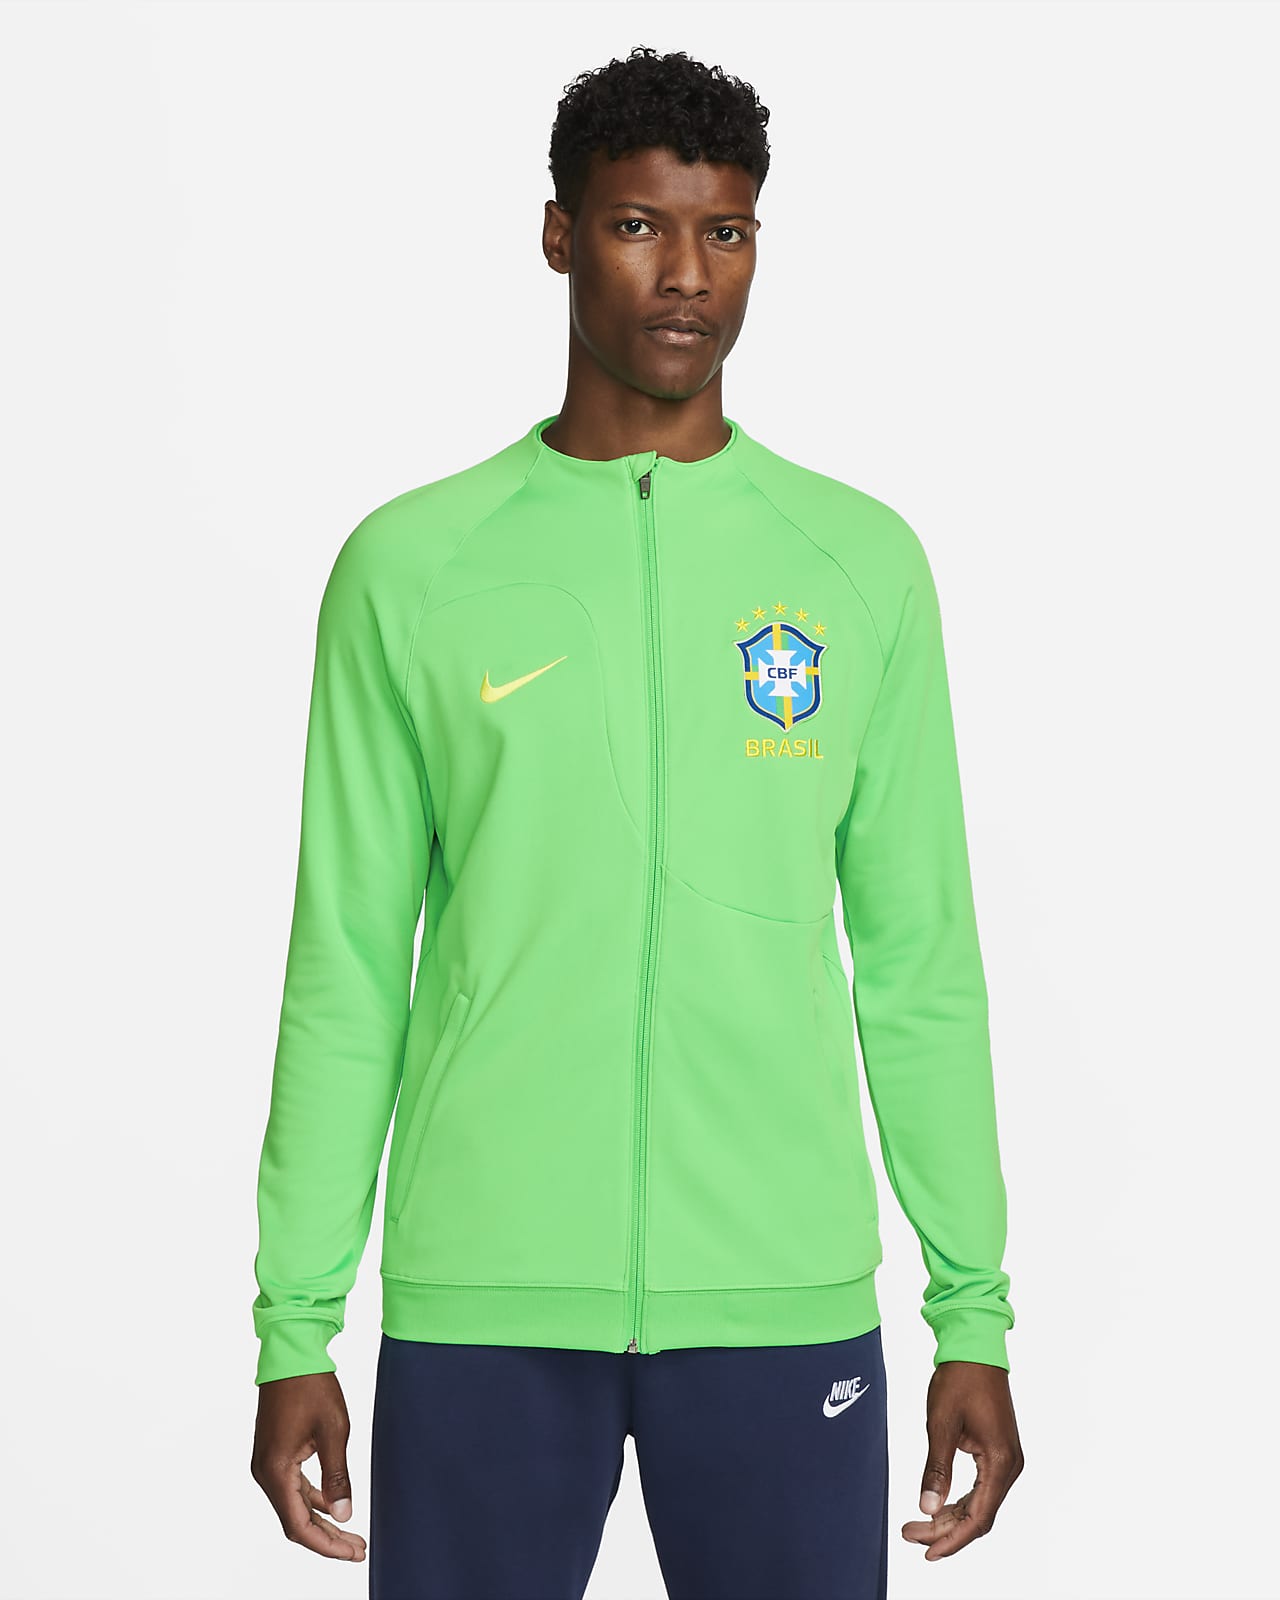 Brazil Academy Pro Men's Knit Soccer Jacket